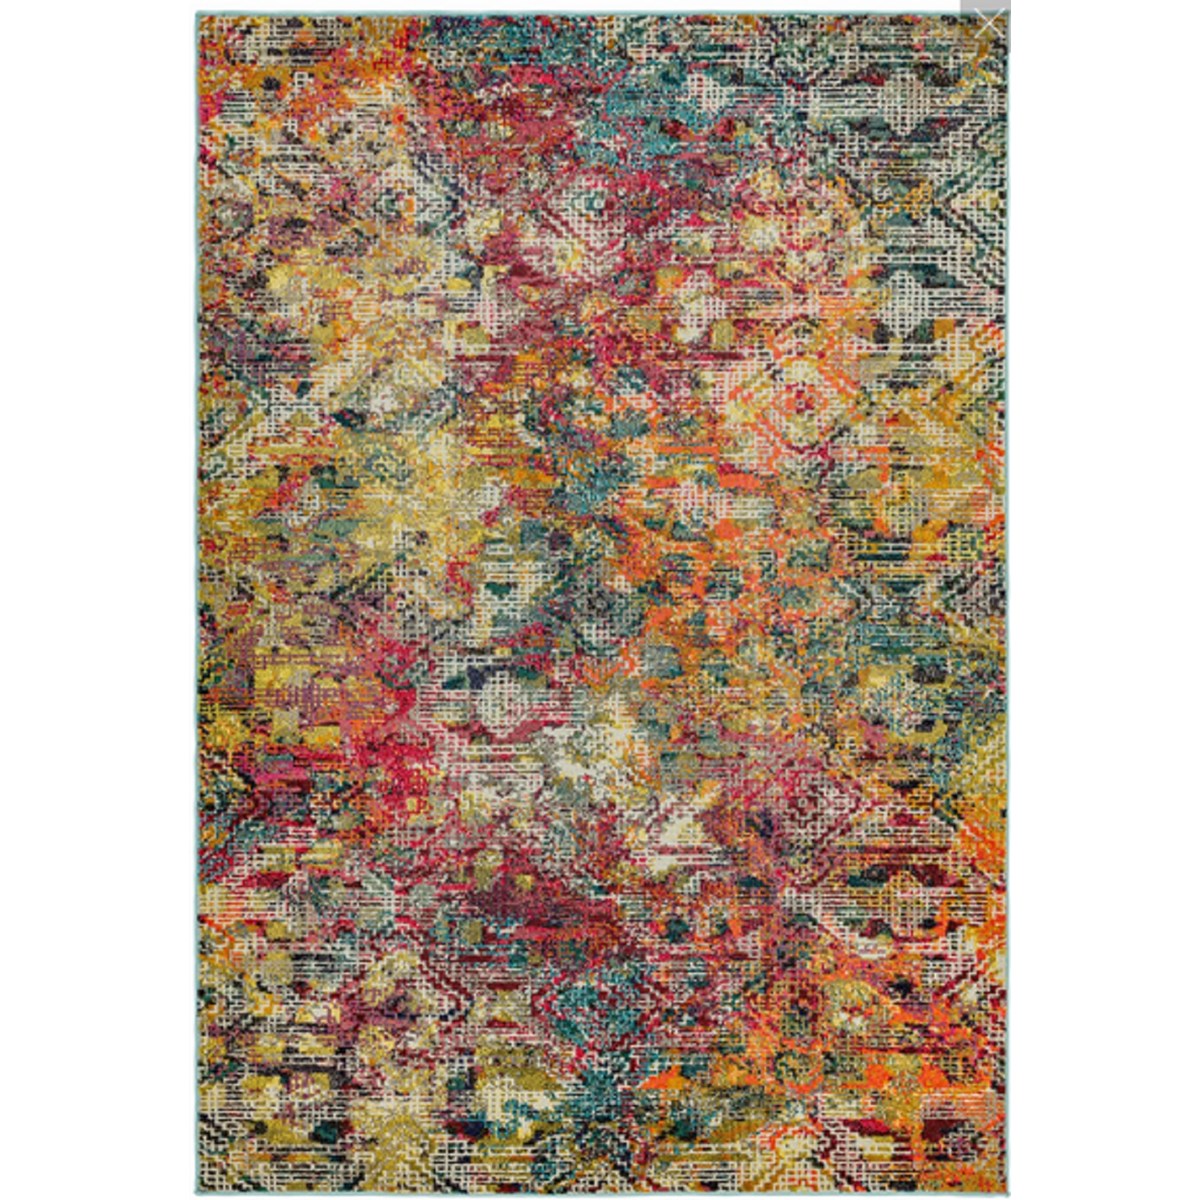 Tapis de salon tissé plat en Polypropylène Multicolore 200x300 cm